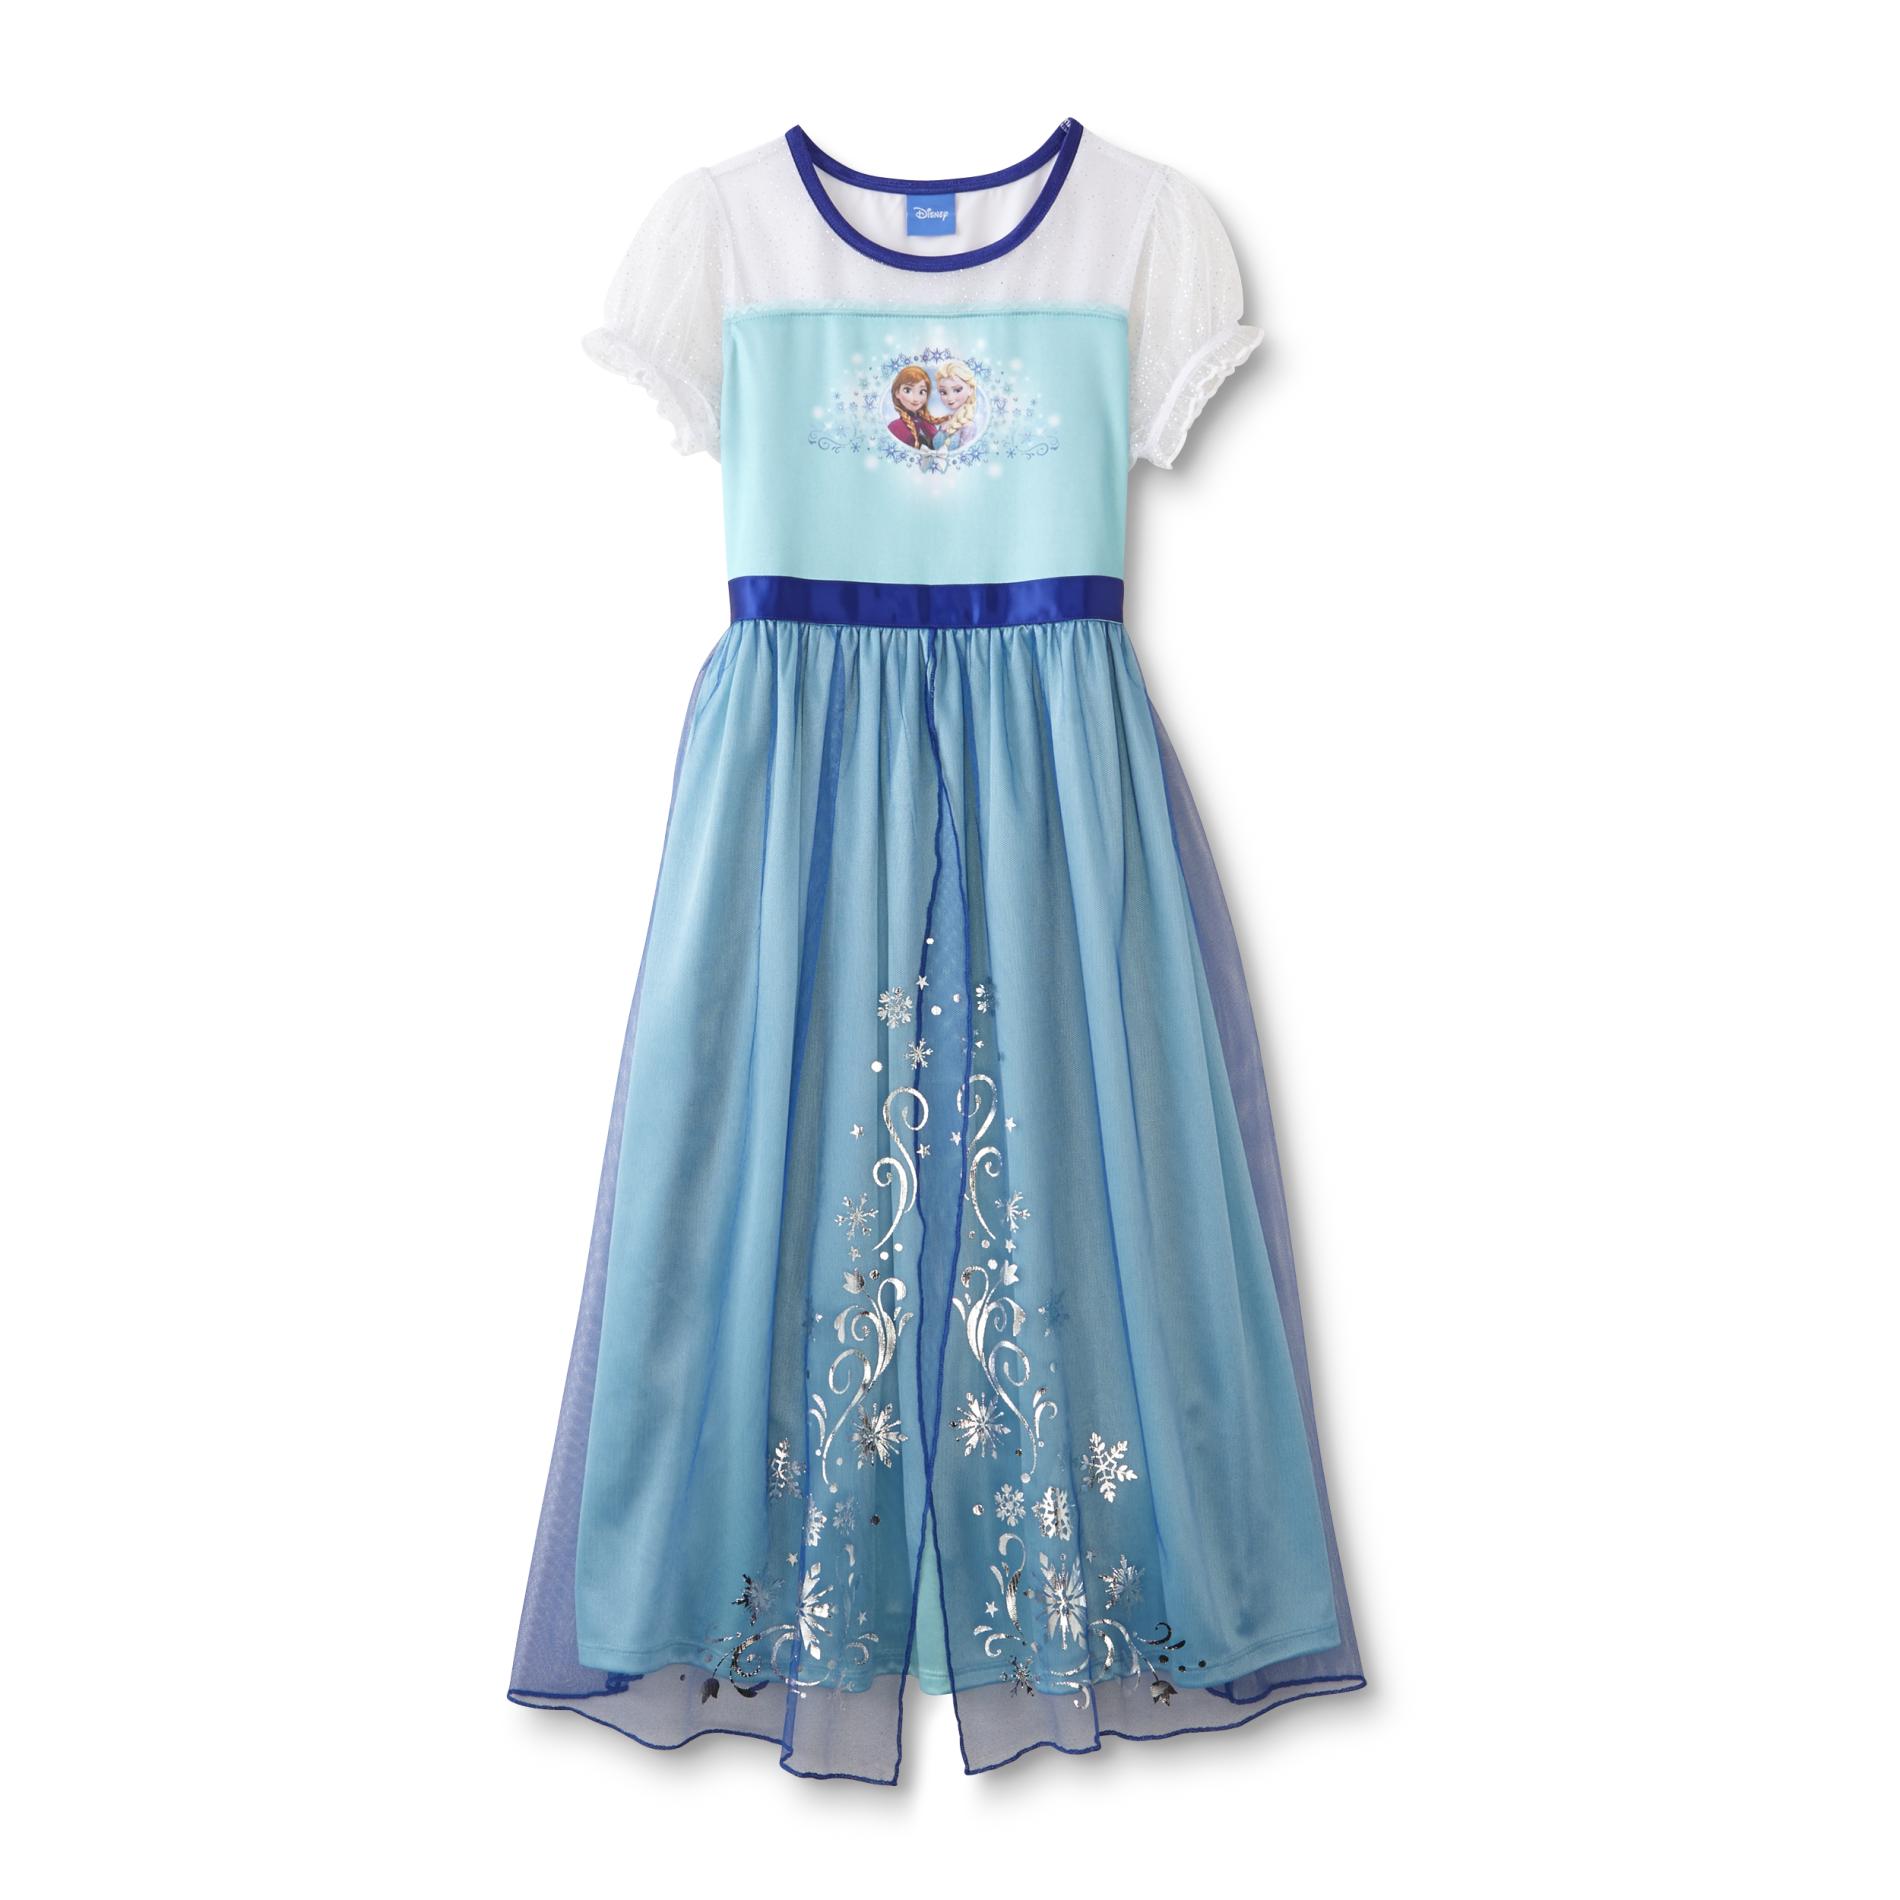 Disney Girl's Costume Dress - Anna & Elsa